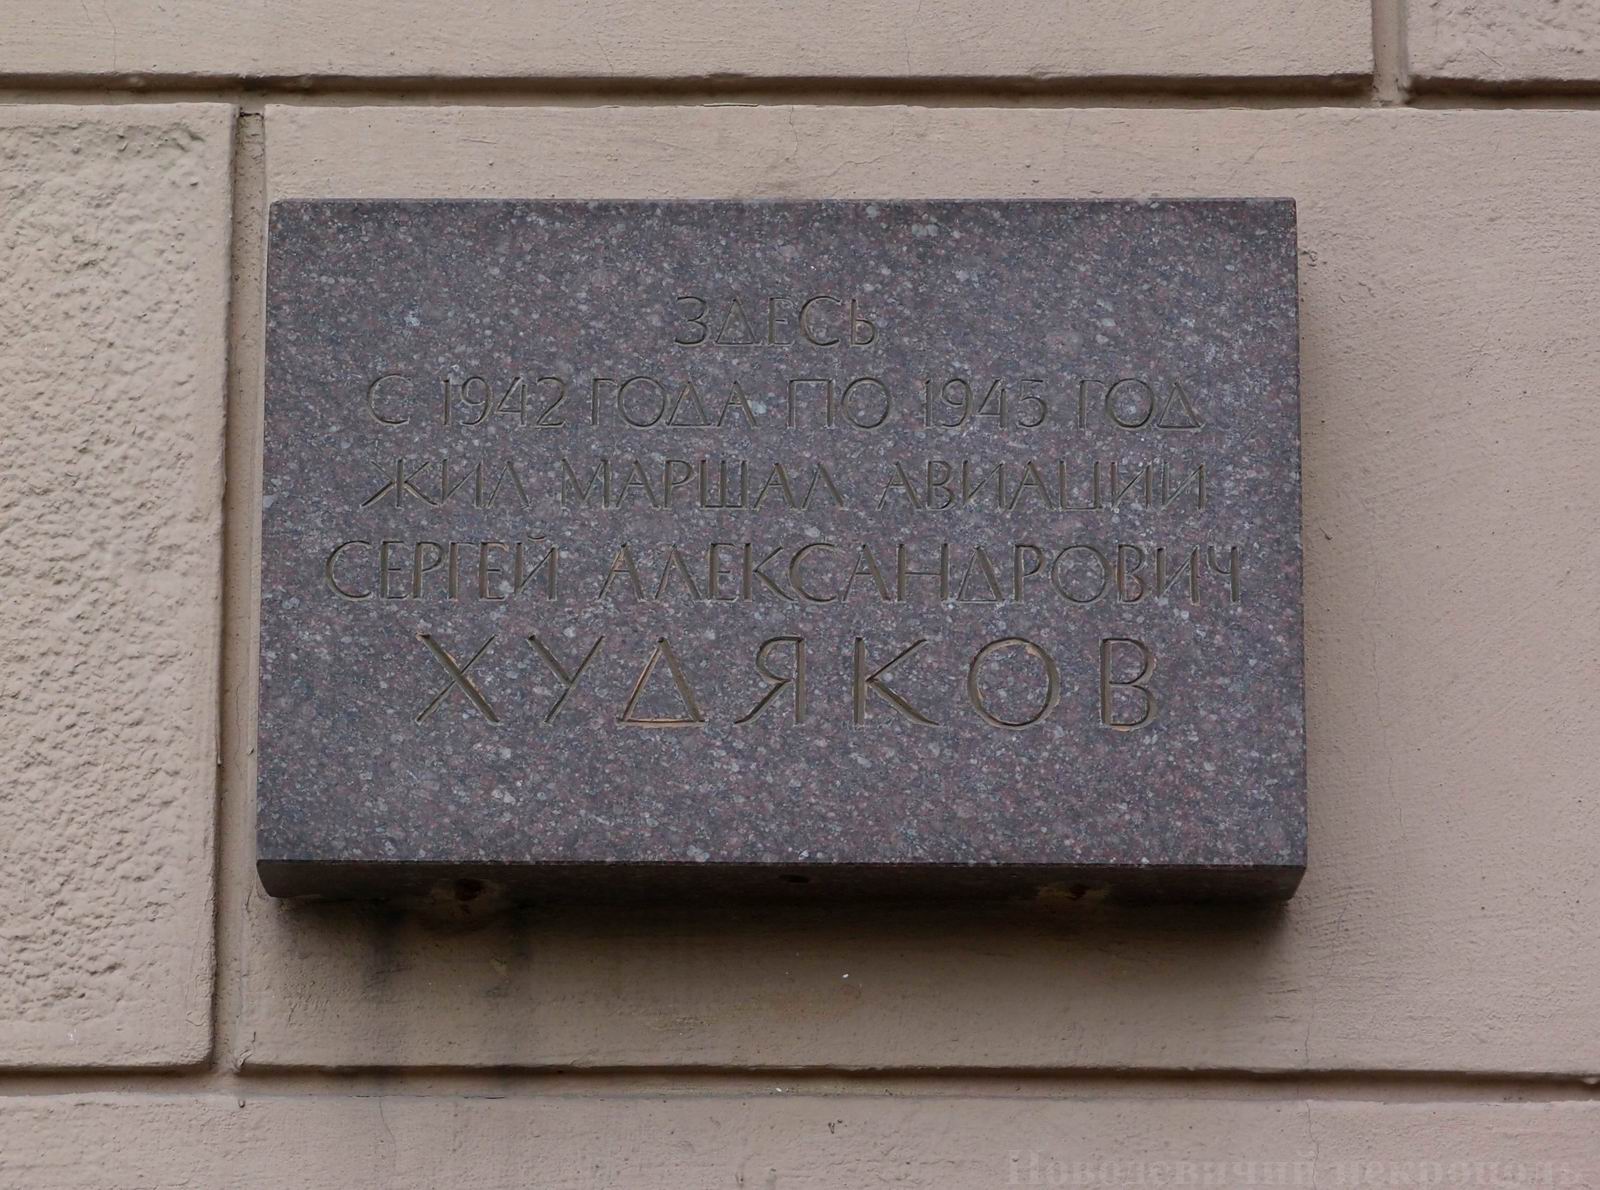 Мемориальная доска Худякову С.А. (1902-1950), арх. В.Я.Ряховский, на Ленинском проспекте, дом 13/1, открыта в 1983.